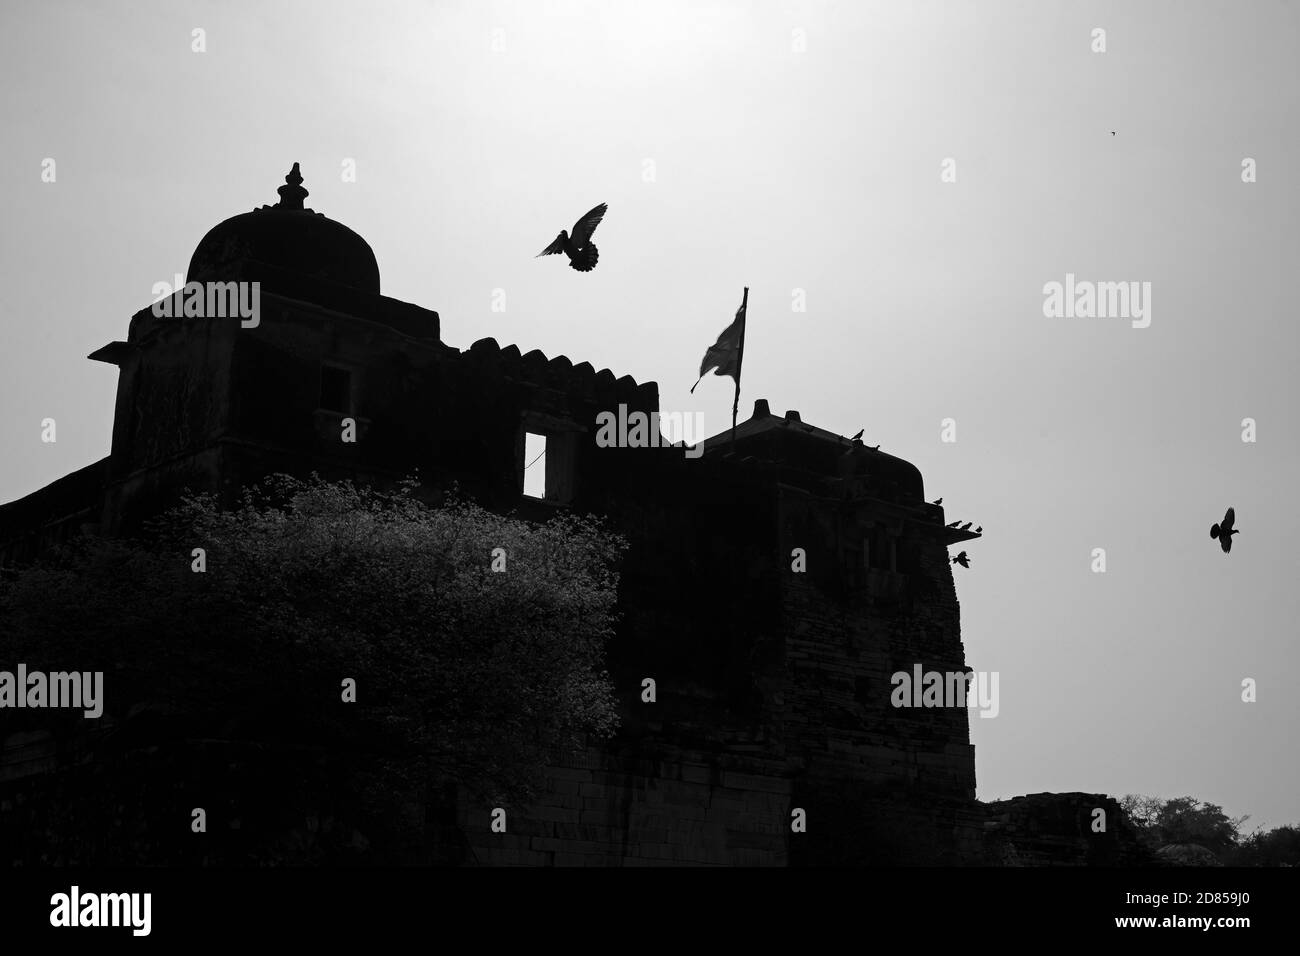 Le fort Chittor ou Chittorgarh est le plus grand fort de l'Inde. C'est un site classé au patrimoine mondial de l'UNESCO, Chittorgarh, Rajasthan, Inde. Banque D'Images